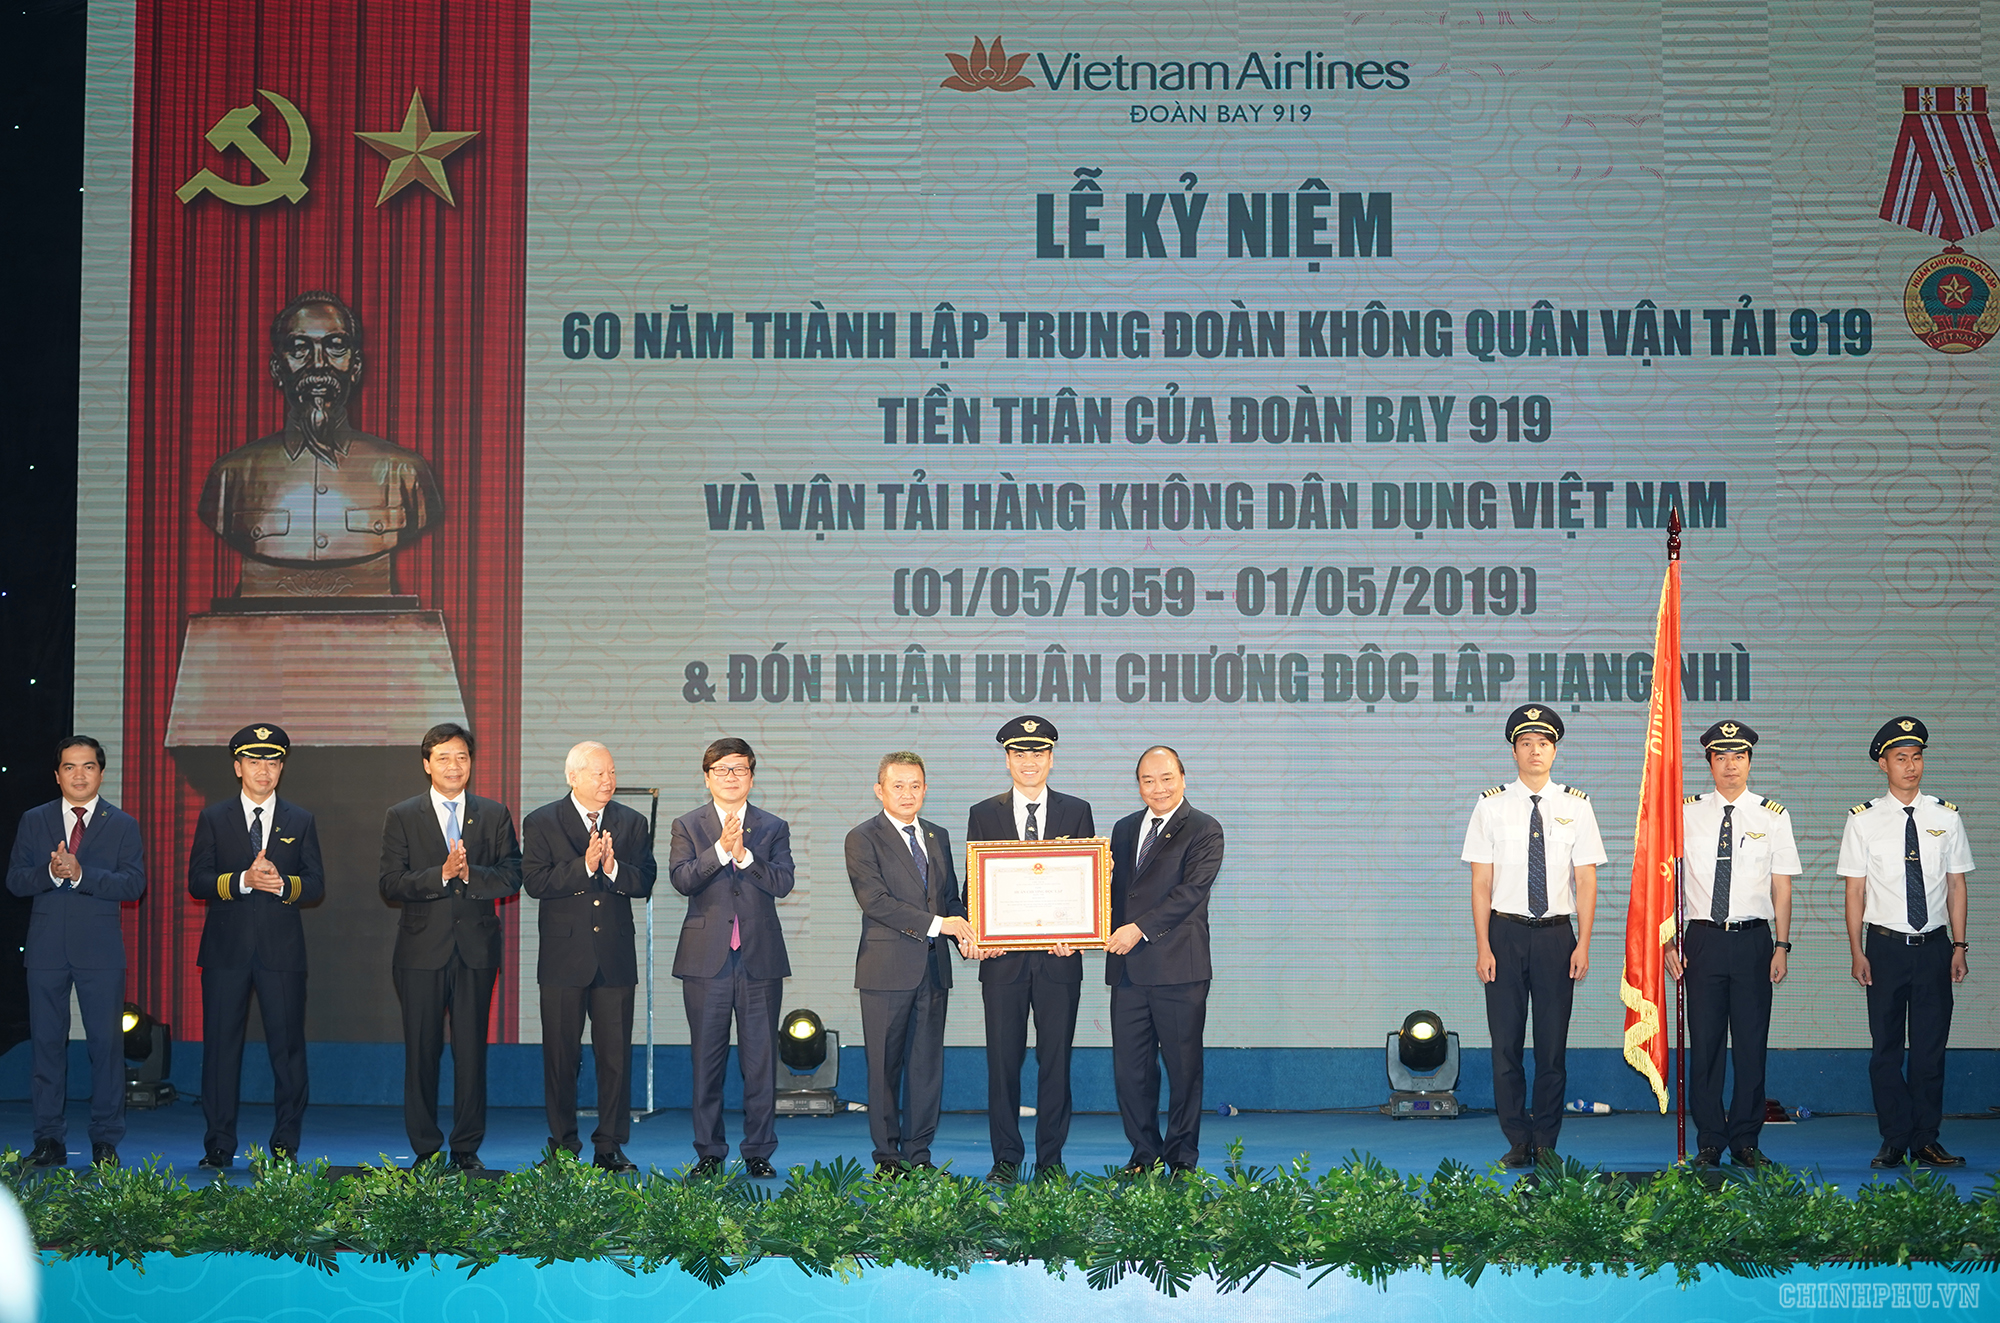 thu tuong mong muon vietnam airlines som tro thanh hang hang khong 5 sao